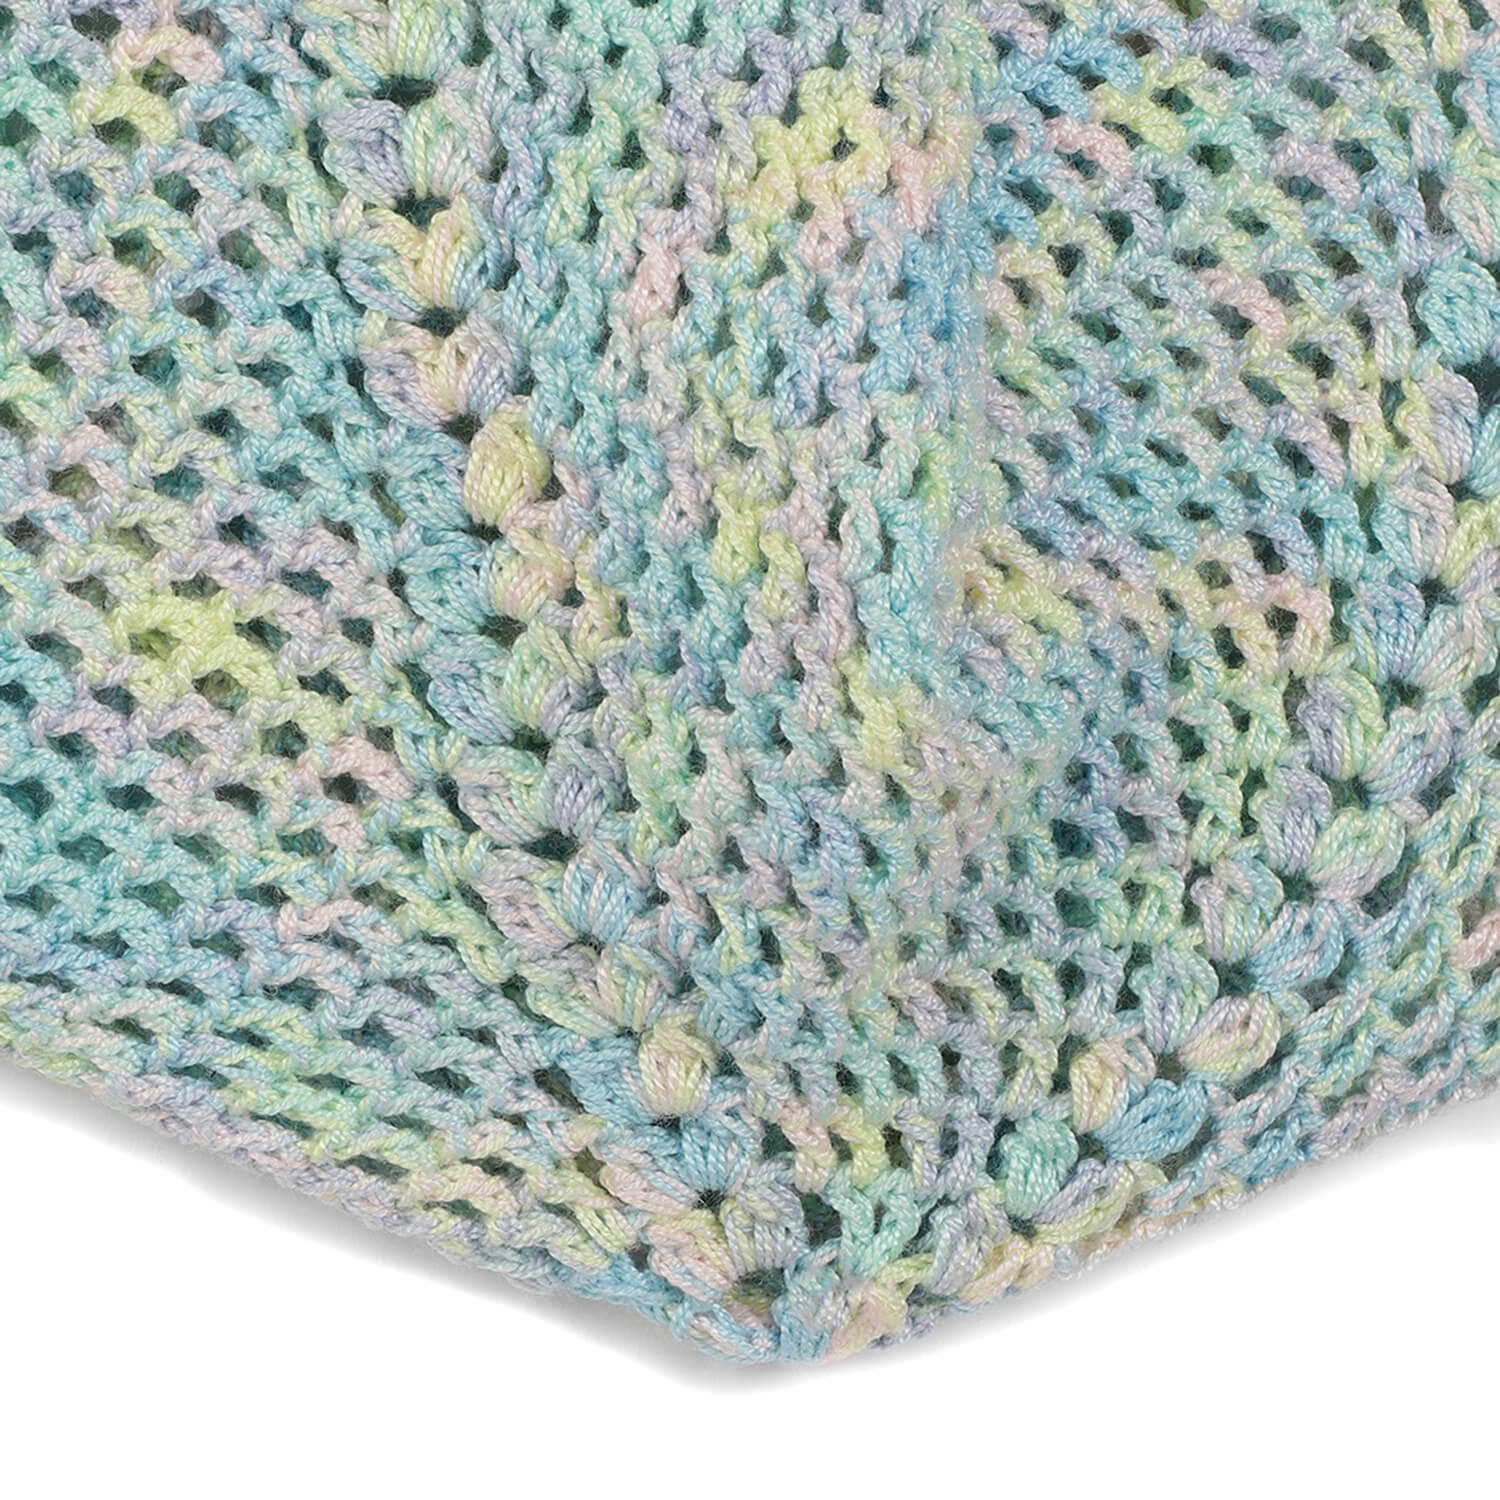 Handmade Crochet Hobo Market Bag - Multi Light 2784